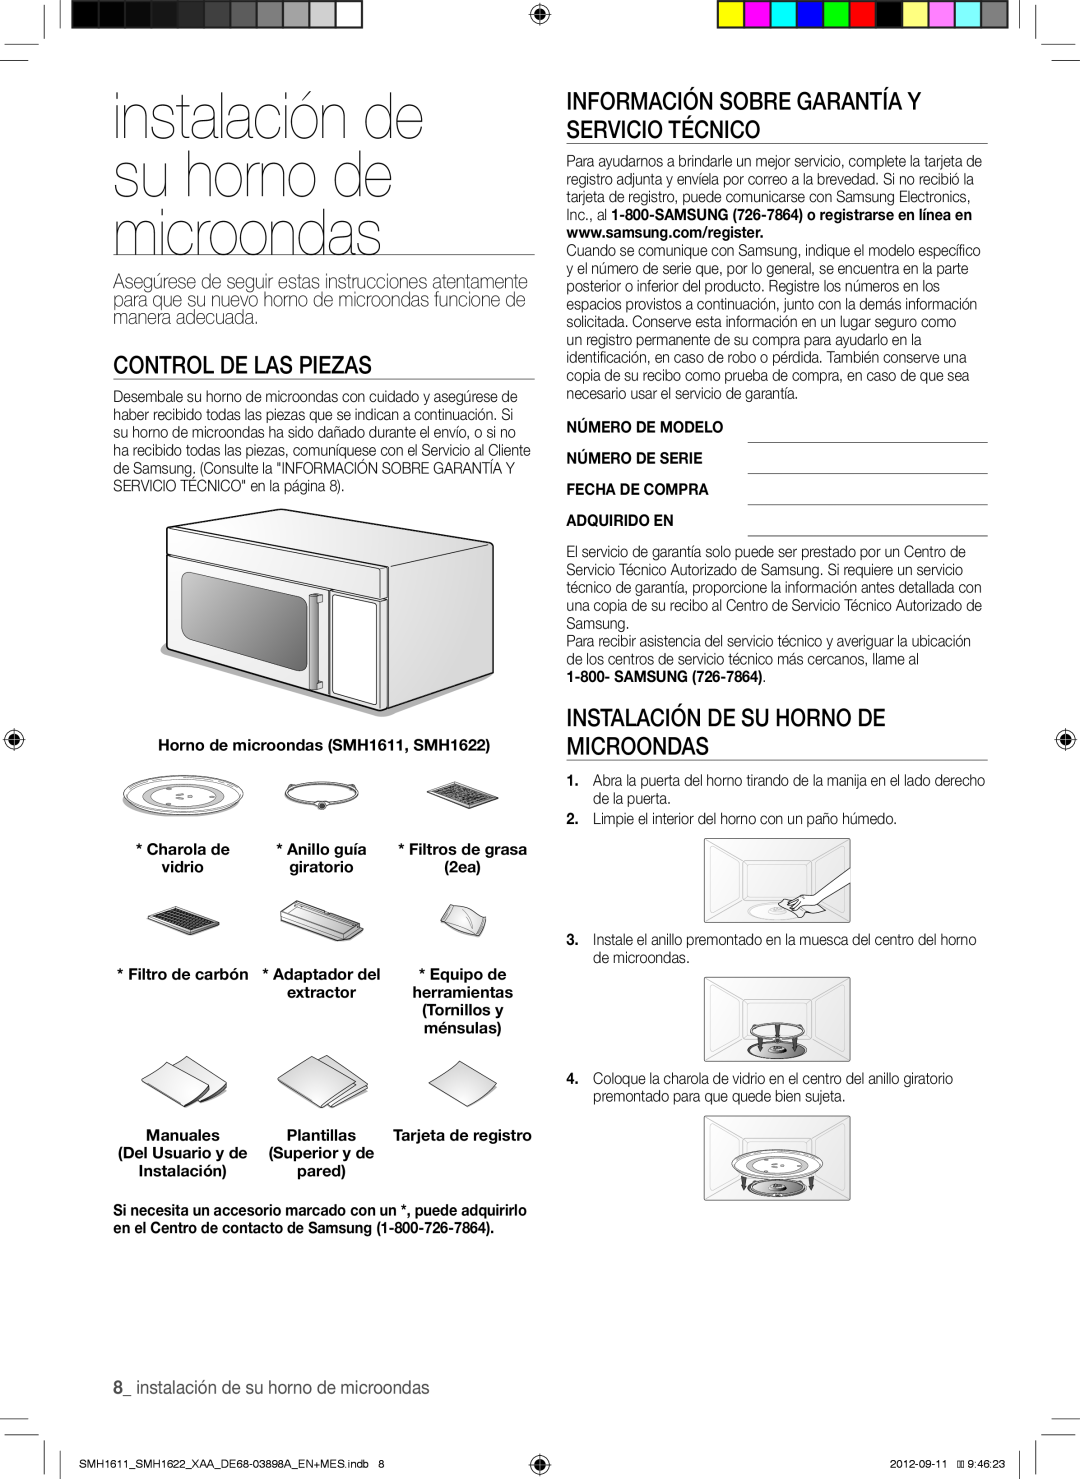 Samsung SMH1611 instalación de su horno de microondas, Control De Las Piezas, Instalación De Su Horno De Microondas 